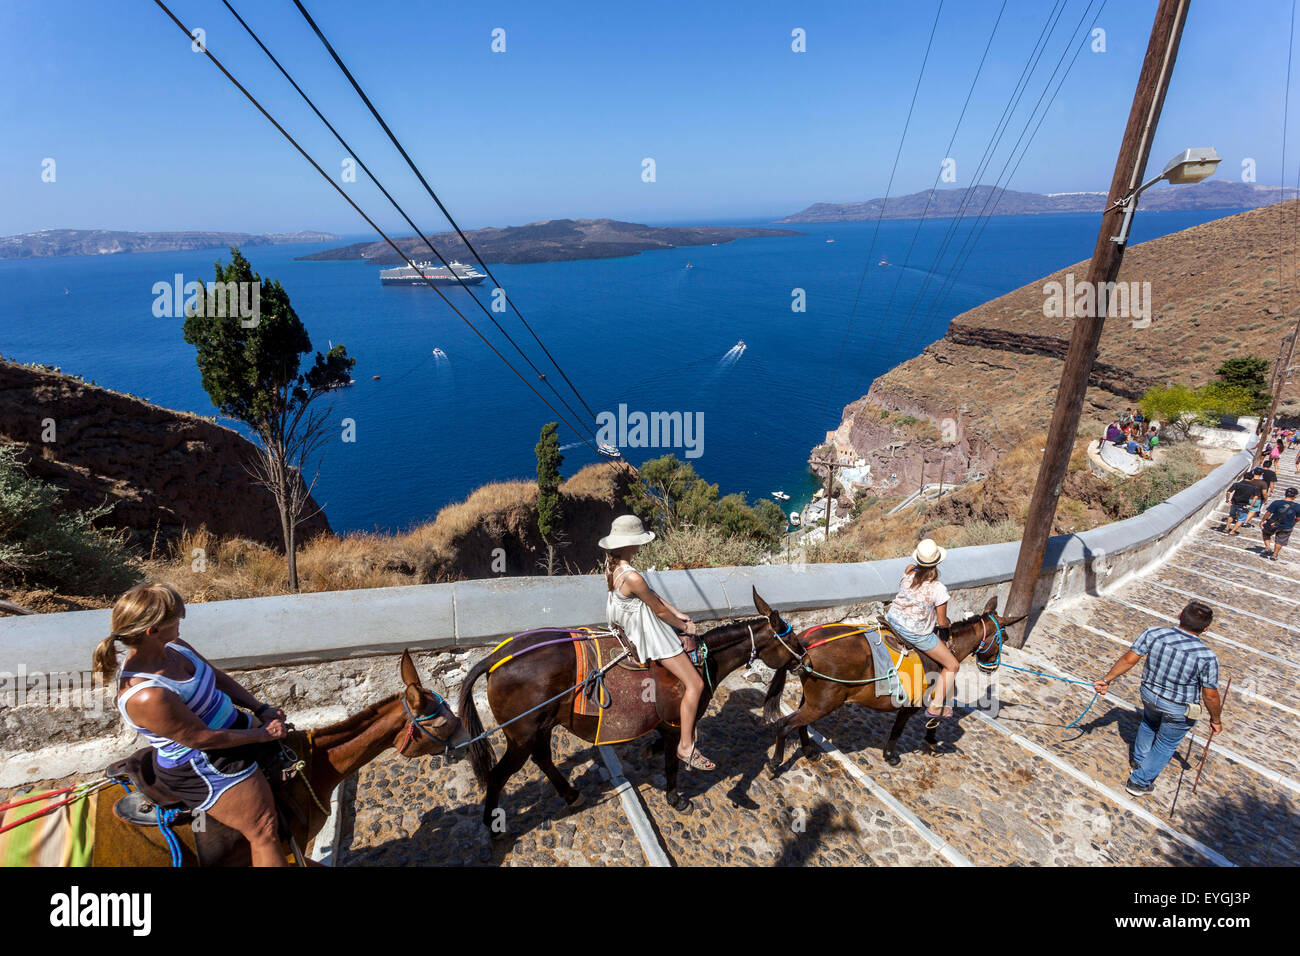 Asini che trasportano i turisti sulla strada che collega il porto alla città di Thira Santorini, l'isola greca, le Cicladi, la baia della Grecia Foto Stock